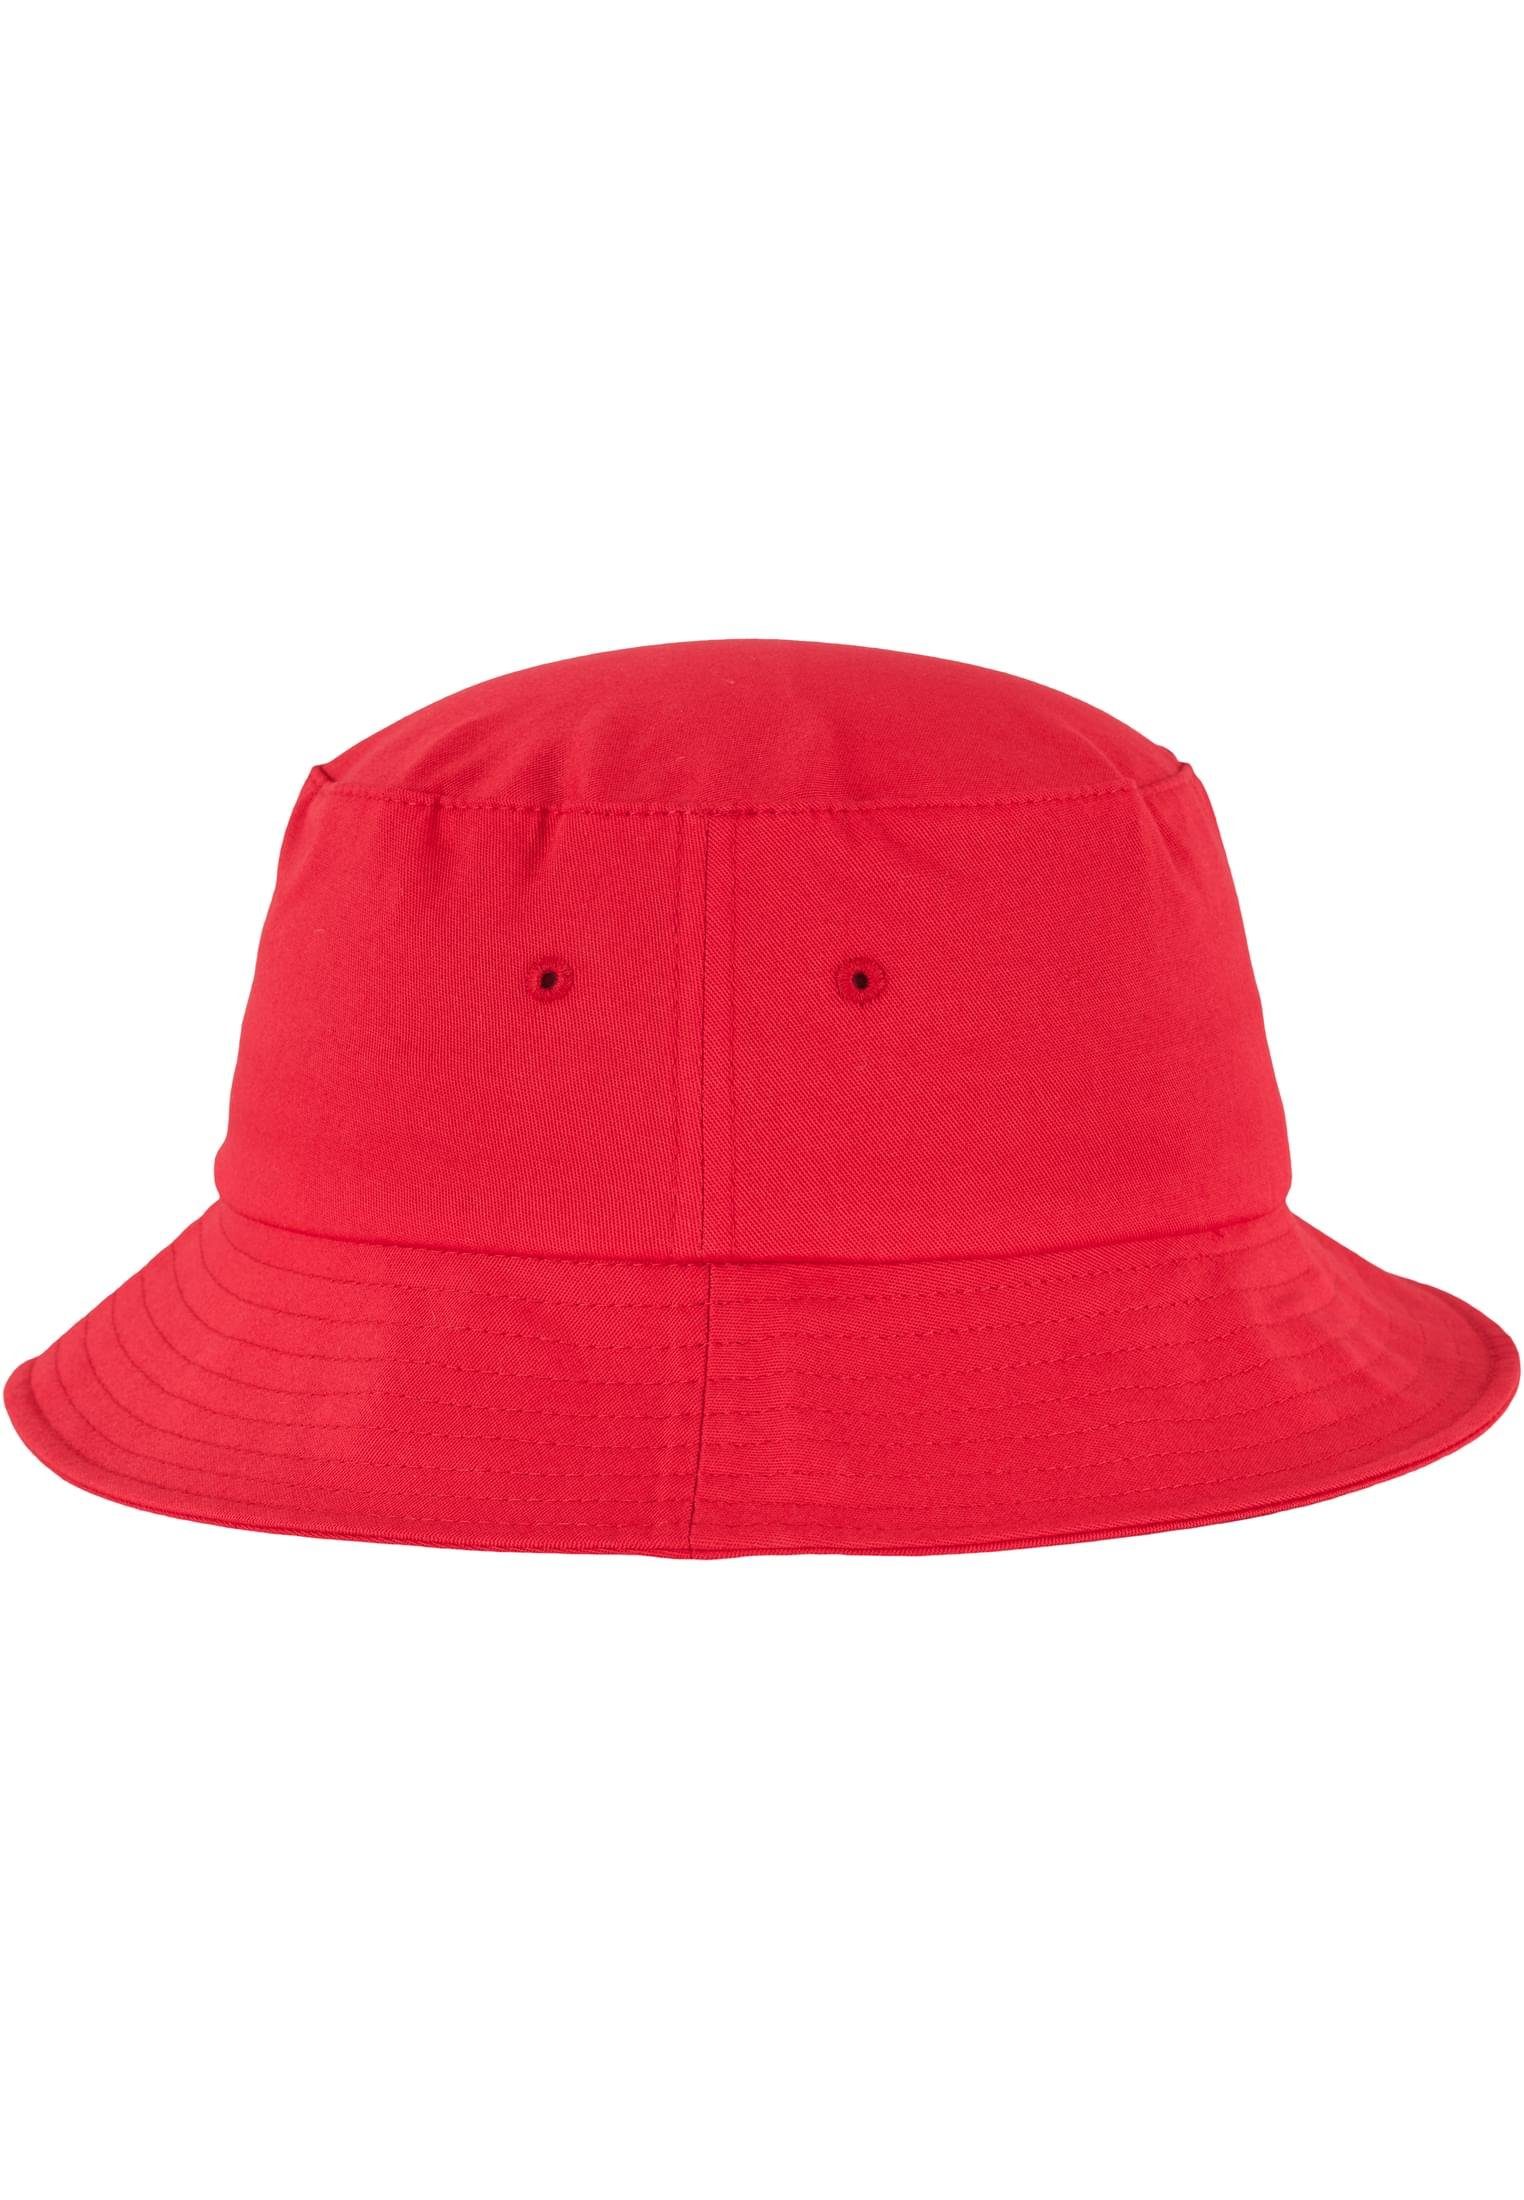 Flexfit Flex Cap Bucket Twill Flexfit Cotton Accessoires red Hat